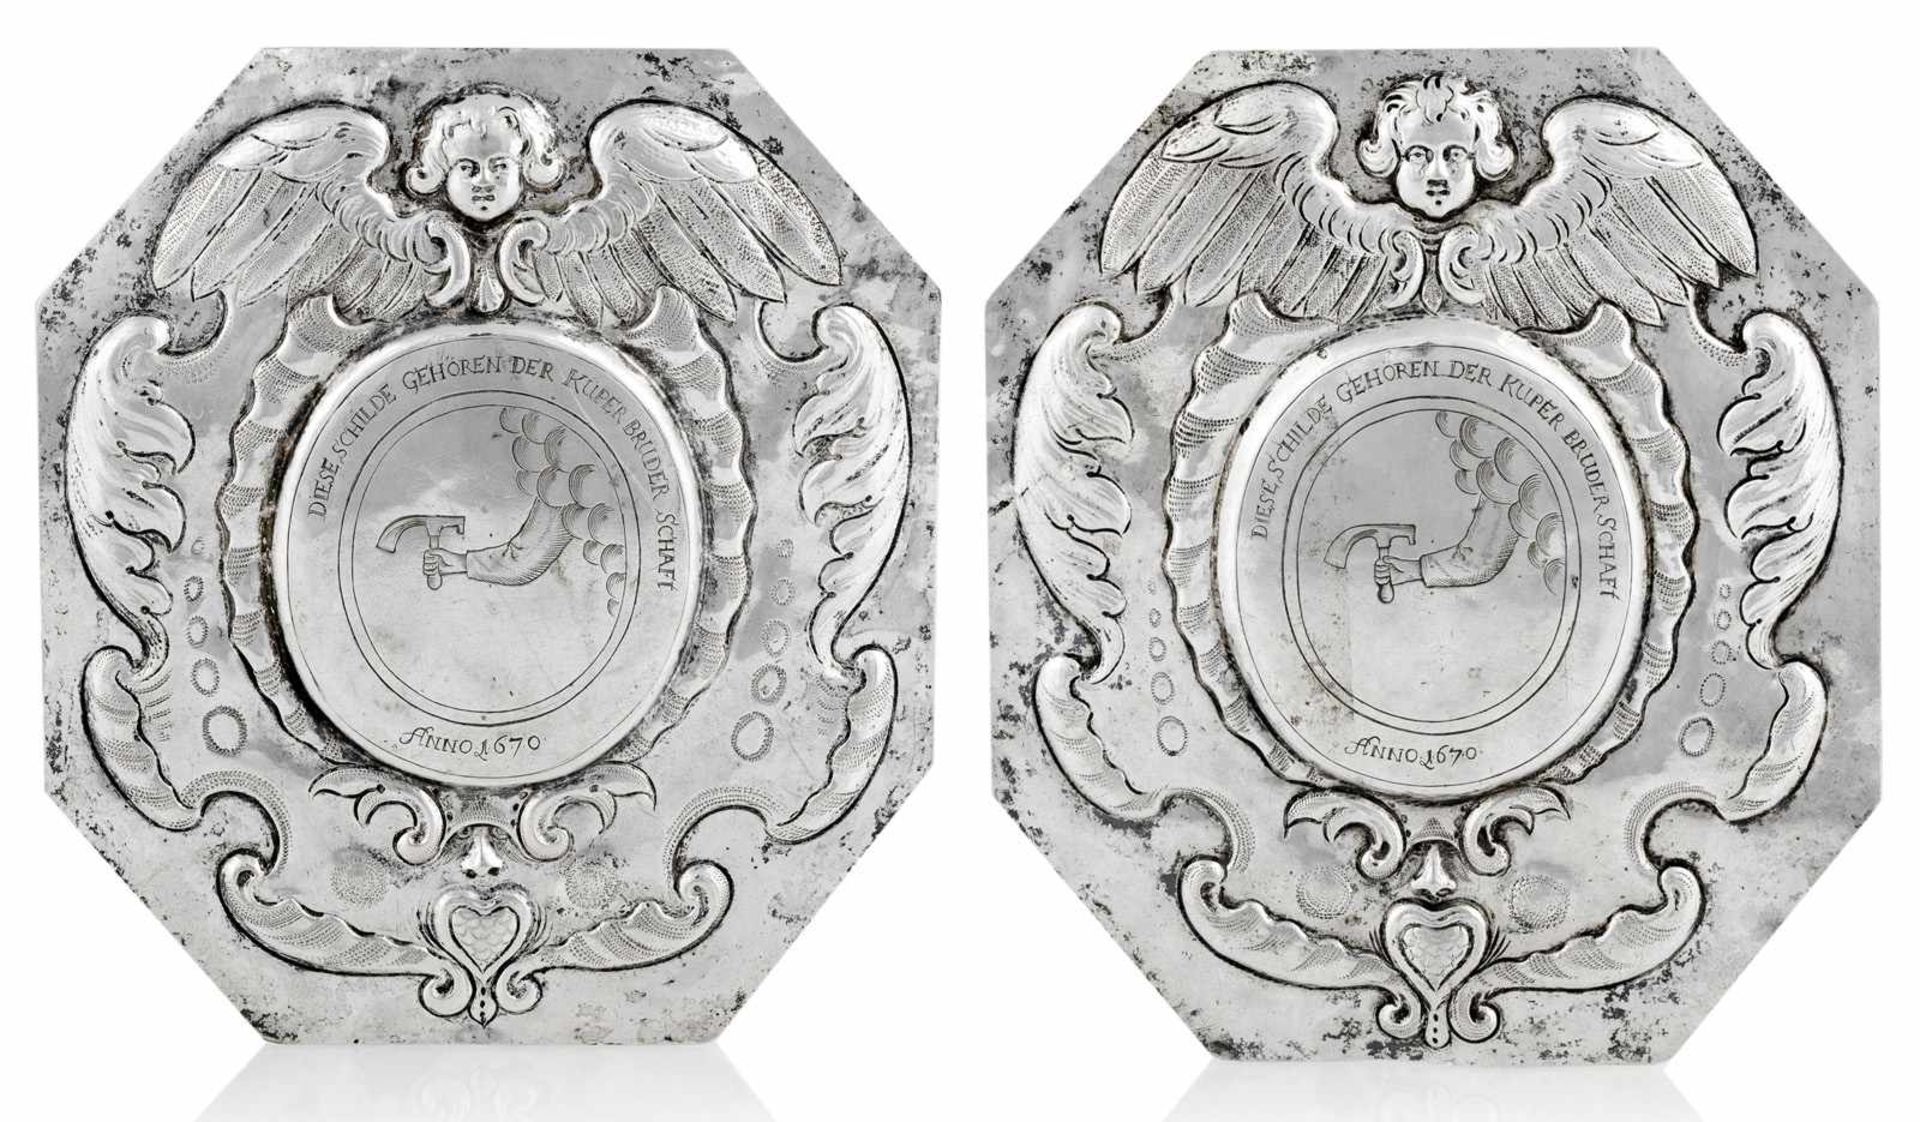 Zwei Schilder der Küfer-ZunftNorddeutsch, datiert 167018 x 16,5 cmSilber, getrieben und graviert.